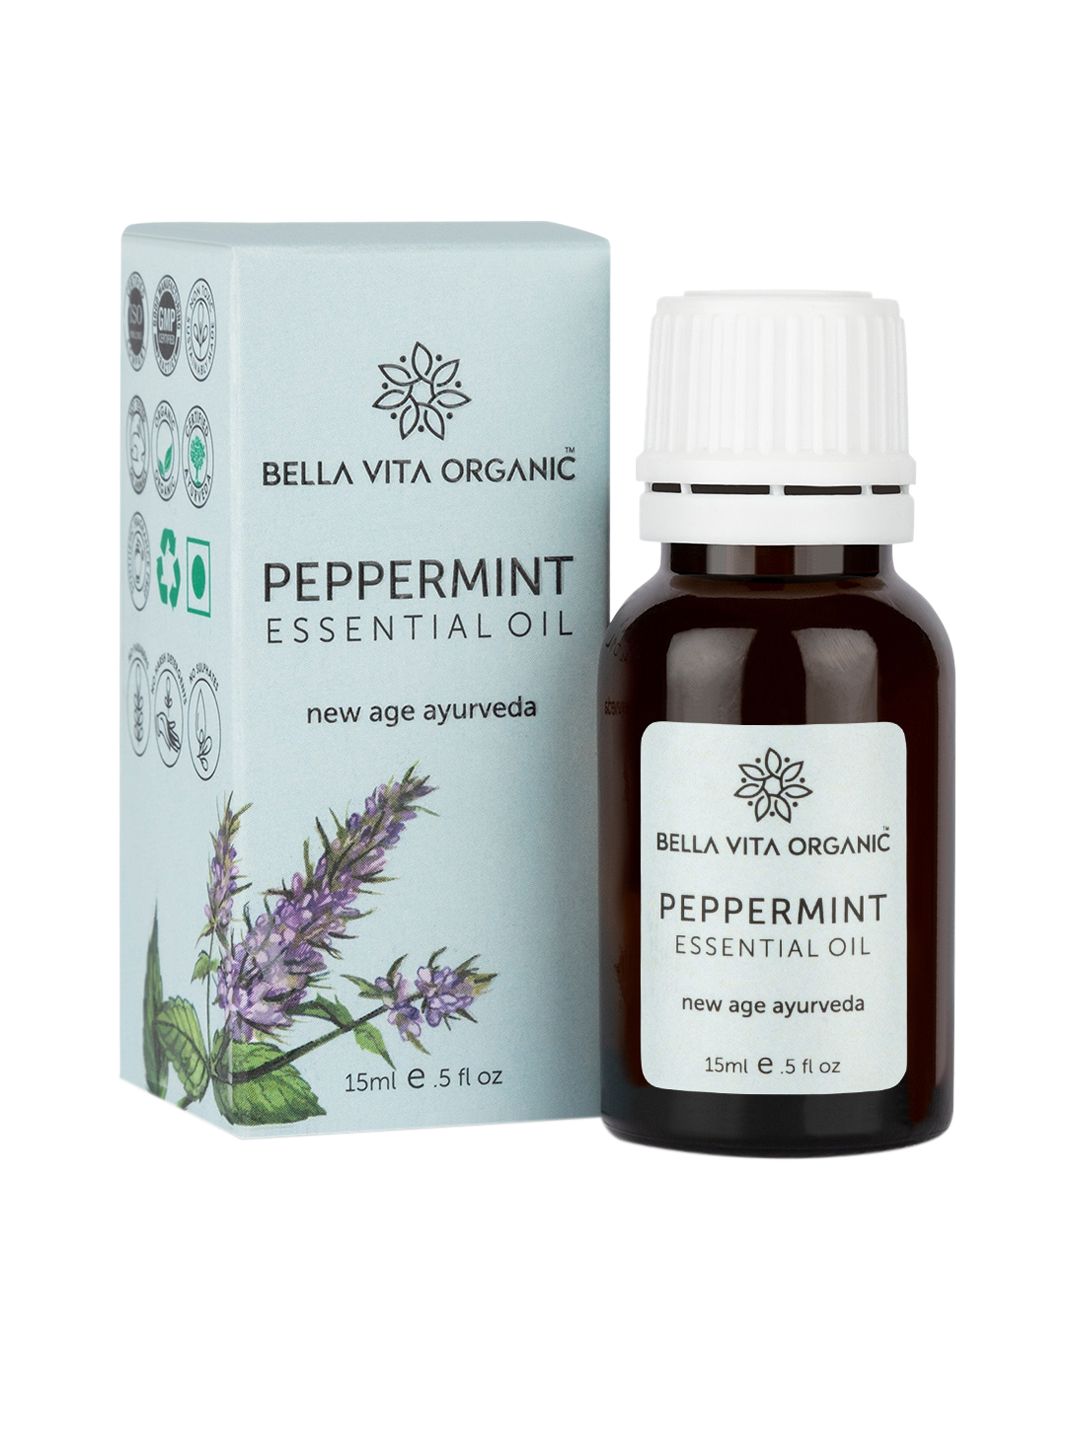 Bella Vita Organic Peppermint Essential Oil - 15ml Price in India